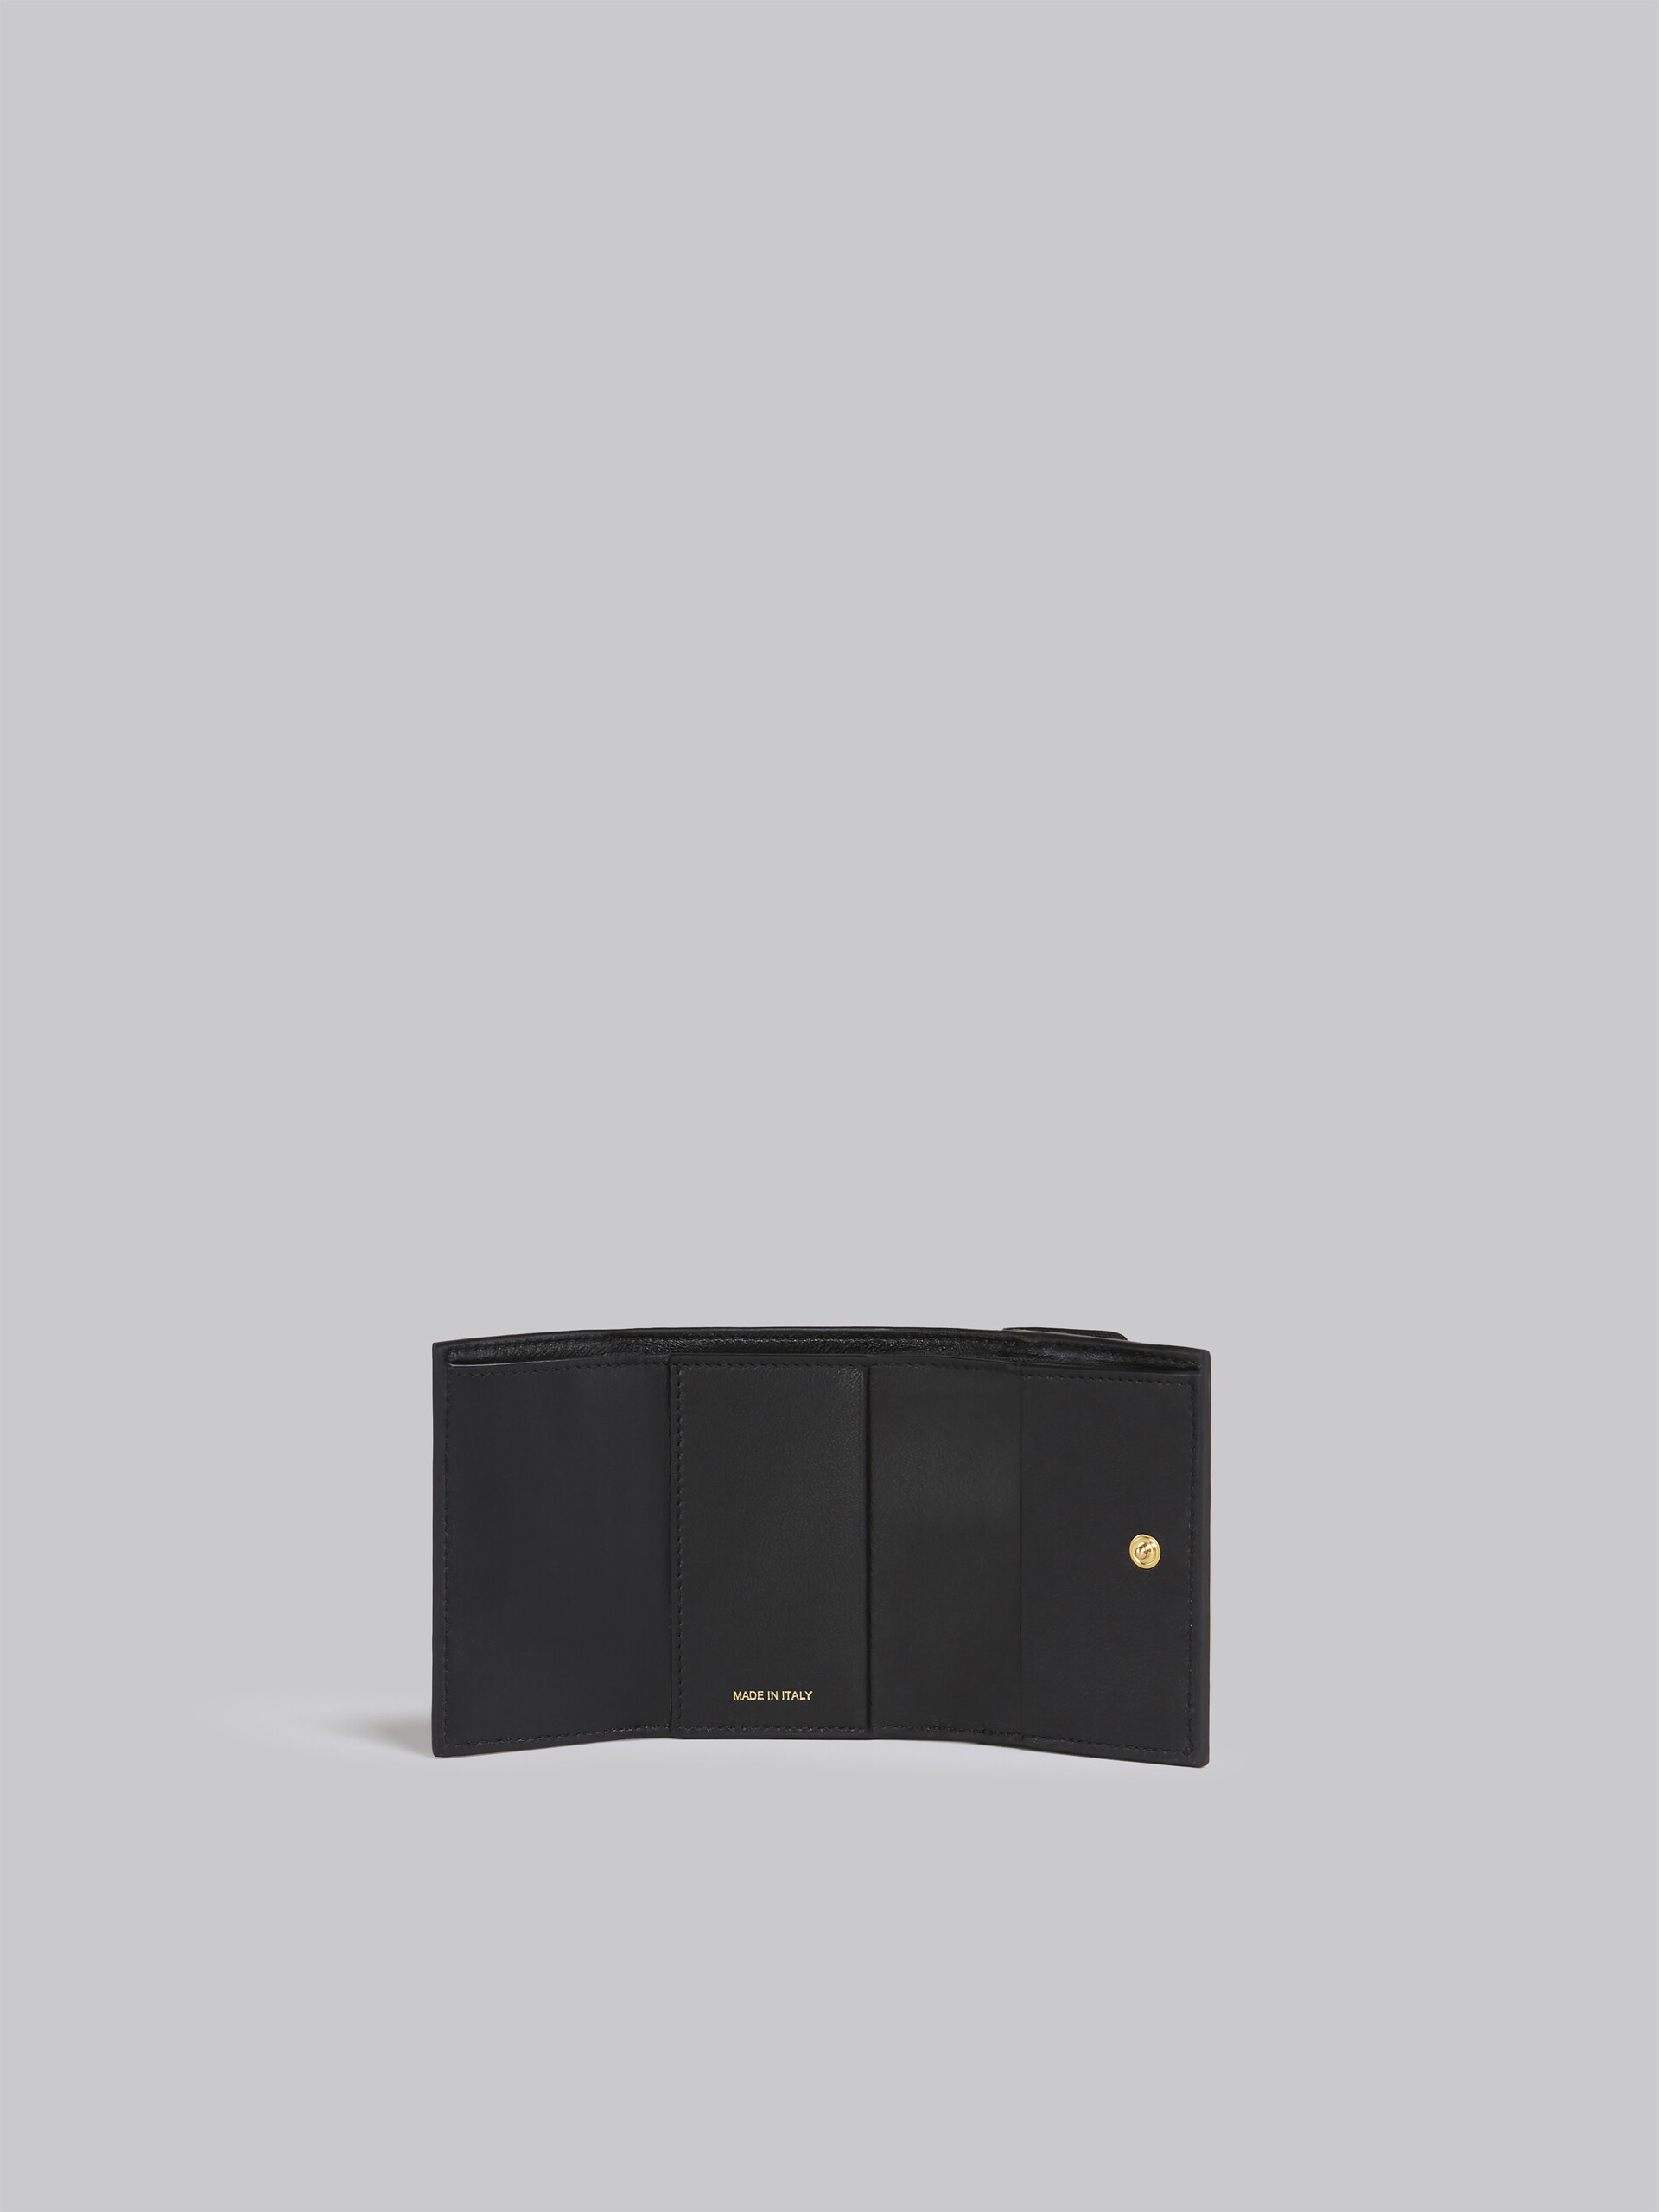 ブルー グレー レッド サフィアーノレザー製 三つ折りウォレット - 財布 - Image 2